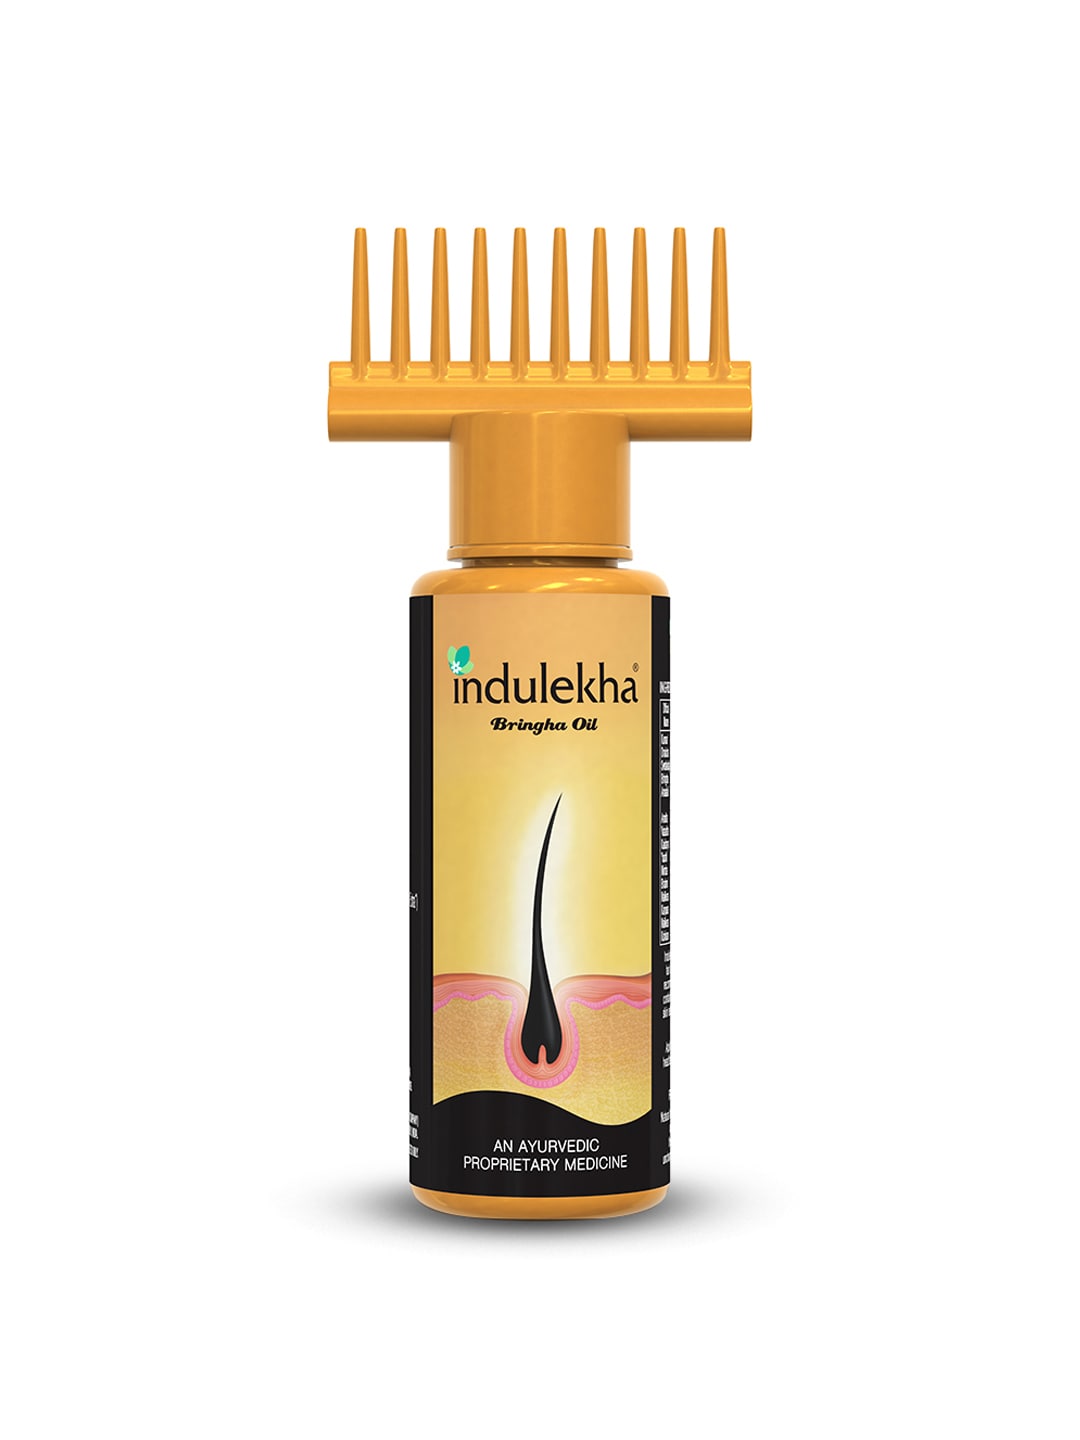 Indulekha Bringha Hair Oil 100 ml Price in India